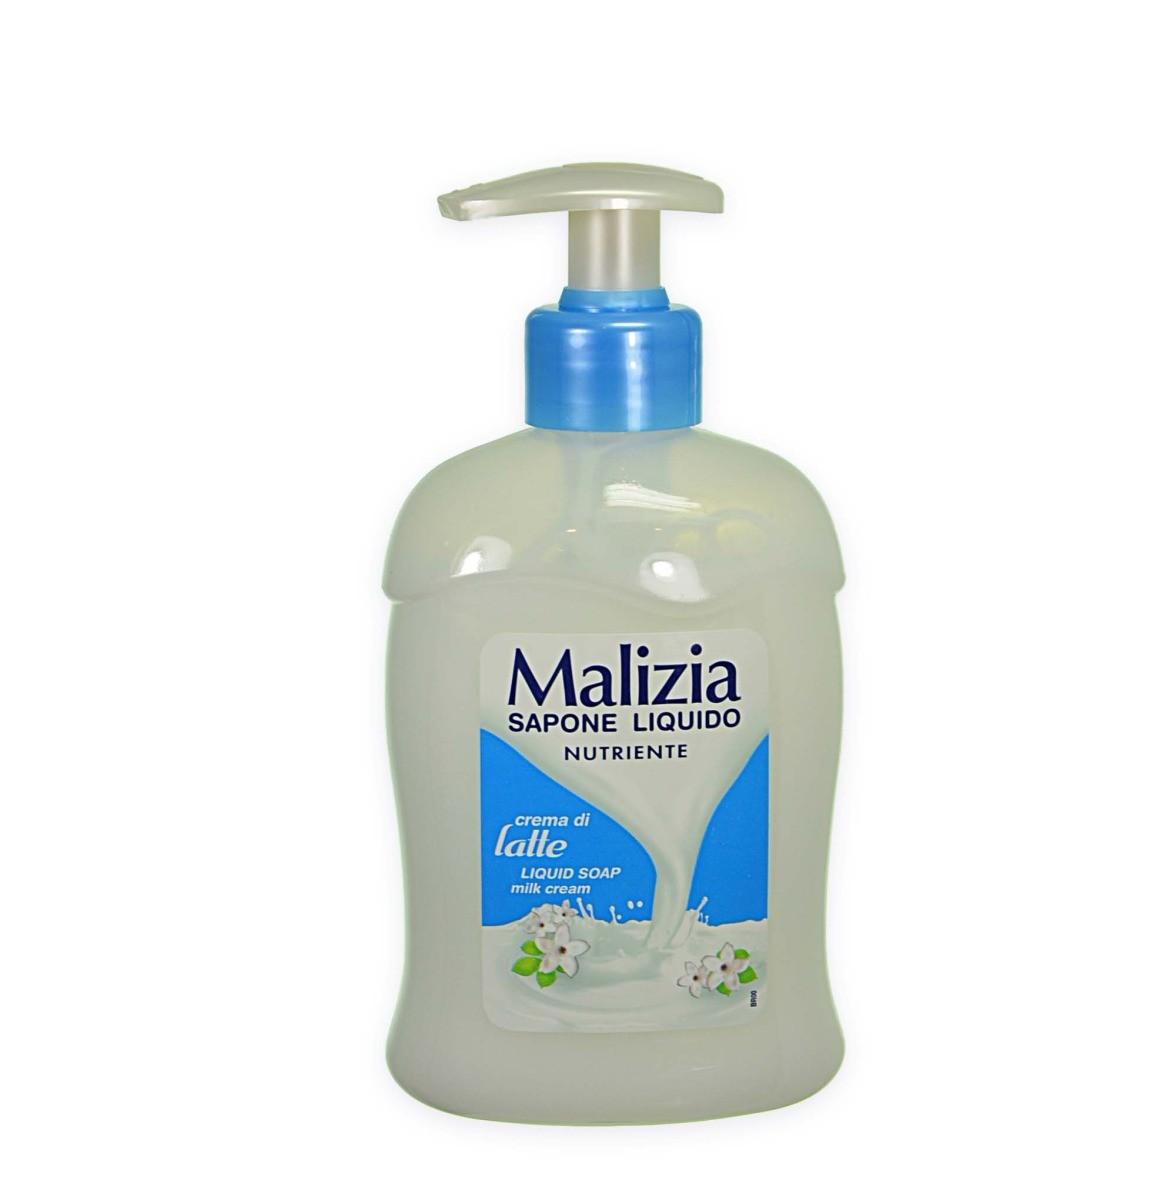 Жидкое мыло Malizia. Malizia мыло жидкое 2015 год. Итальянское мыло. Мализиа крем. Крем мыло для душа